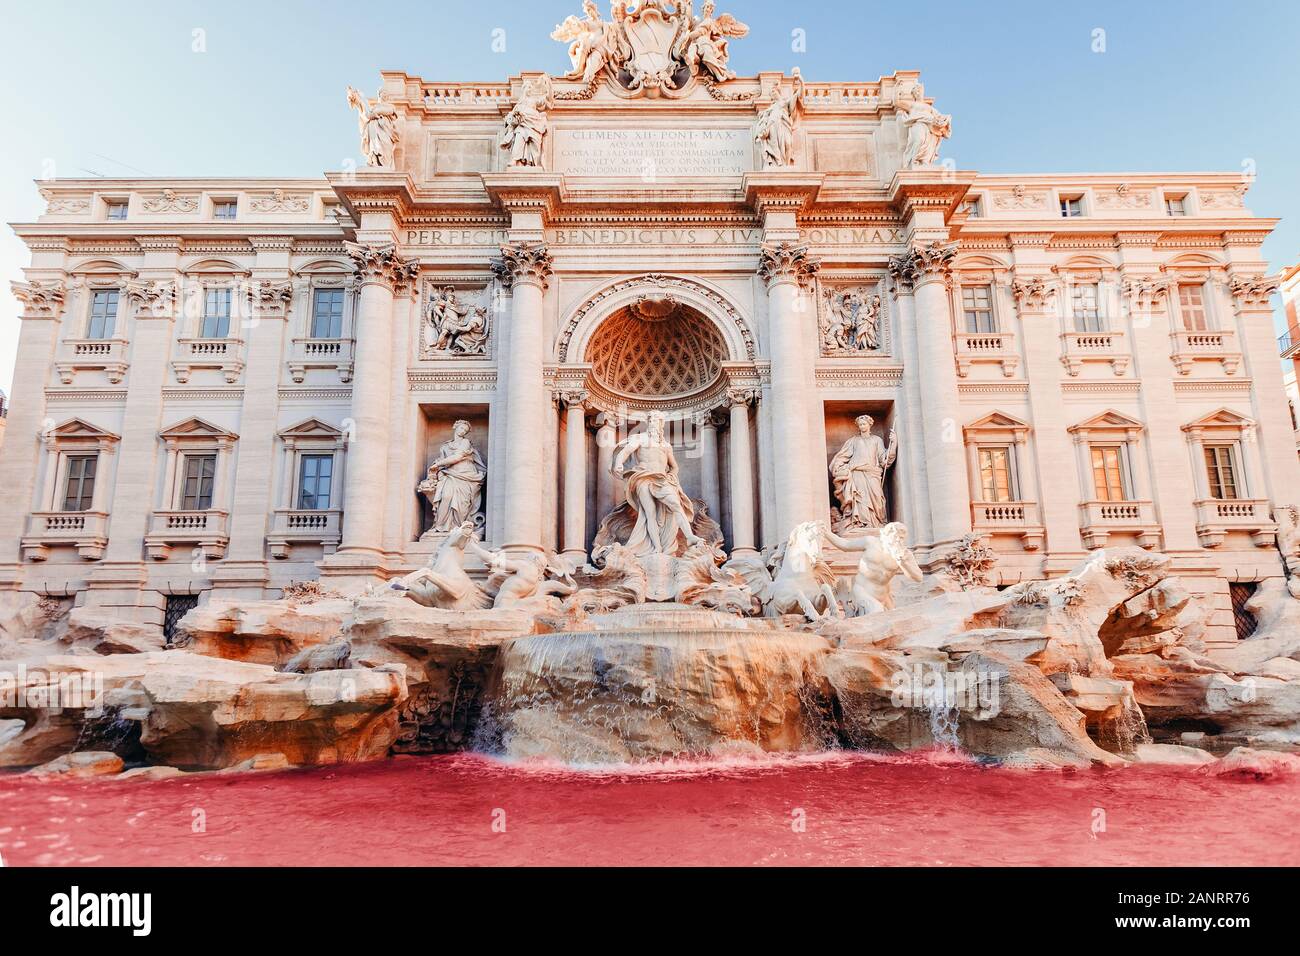 Fontaine de Trevi coucher du soleil d'eau rouge et de l'architecture baroque monument Rome Italie Banque D'Images